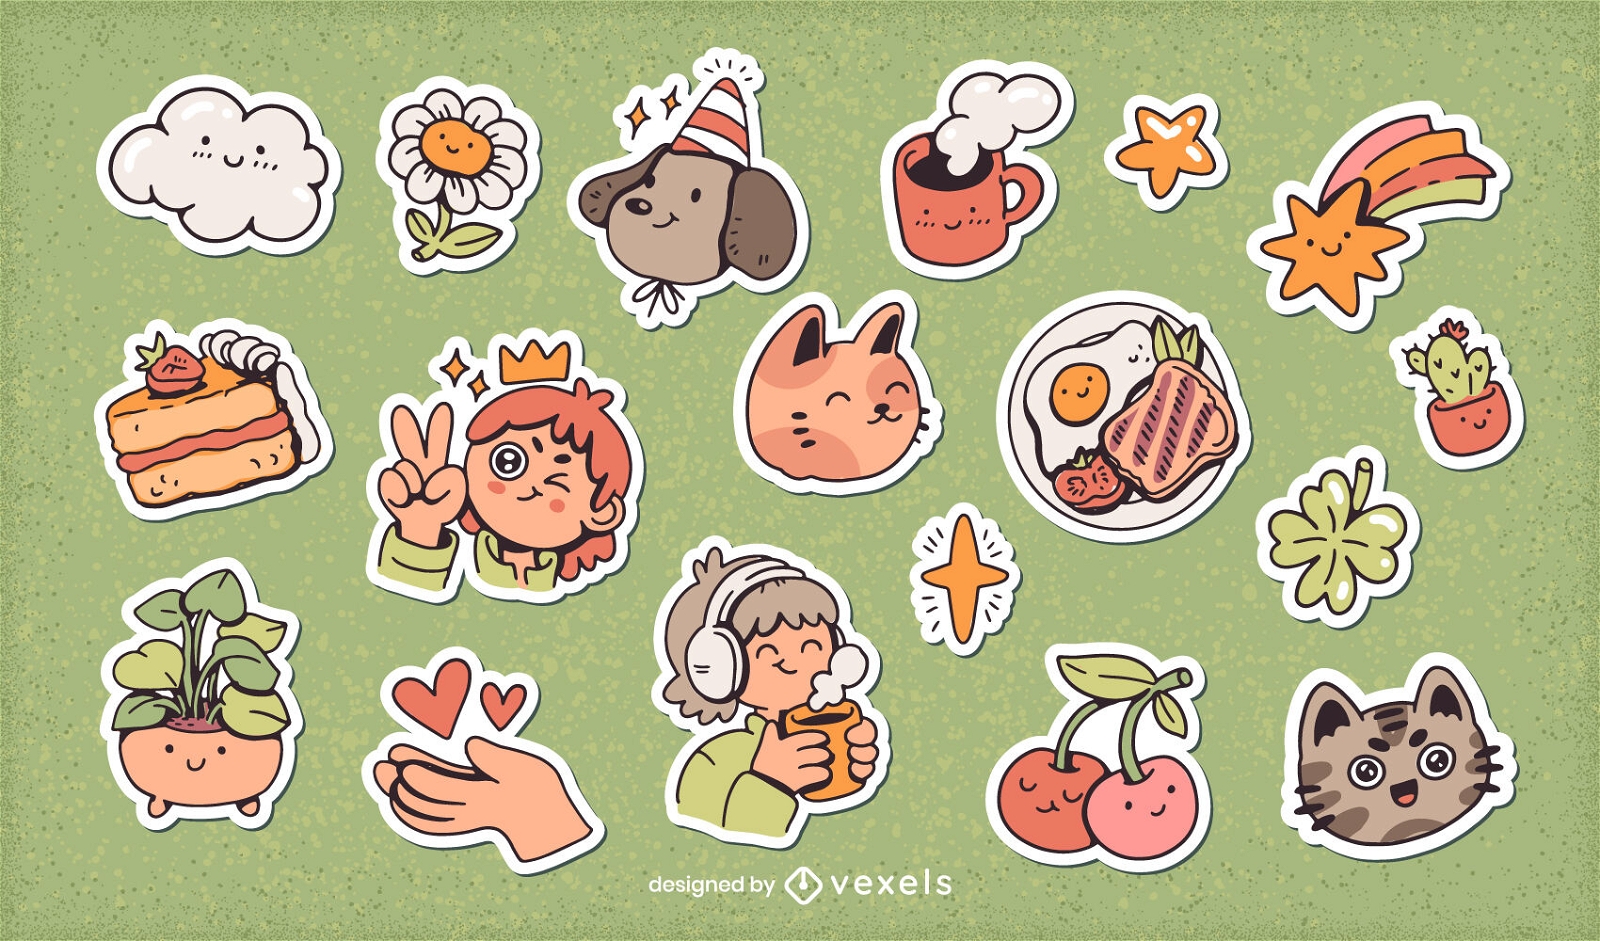 Cute self esteem cartoon stickers set